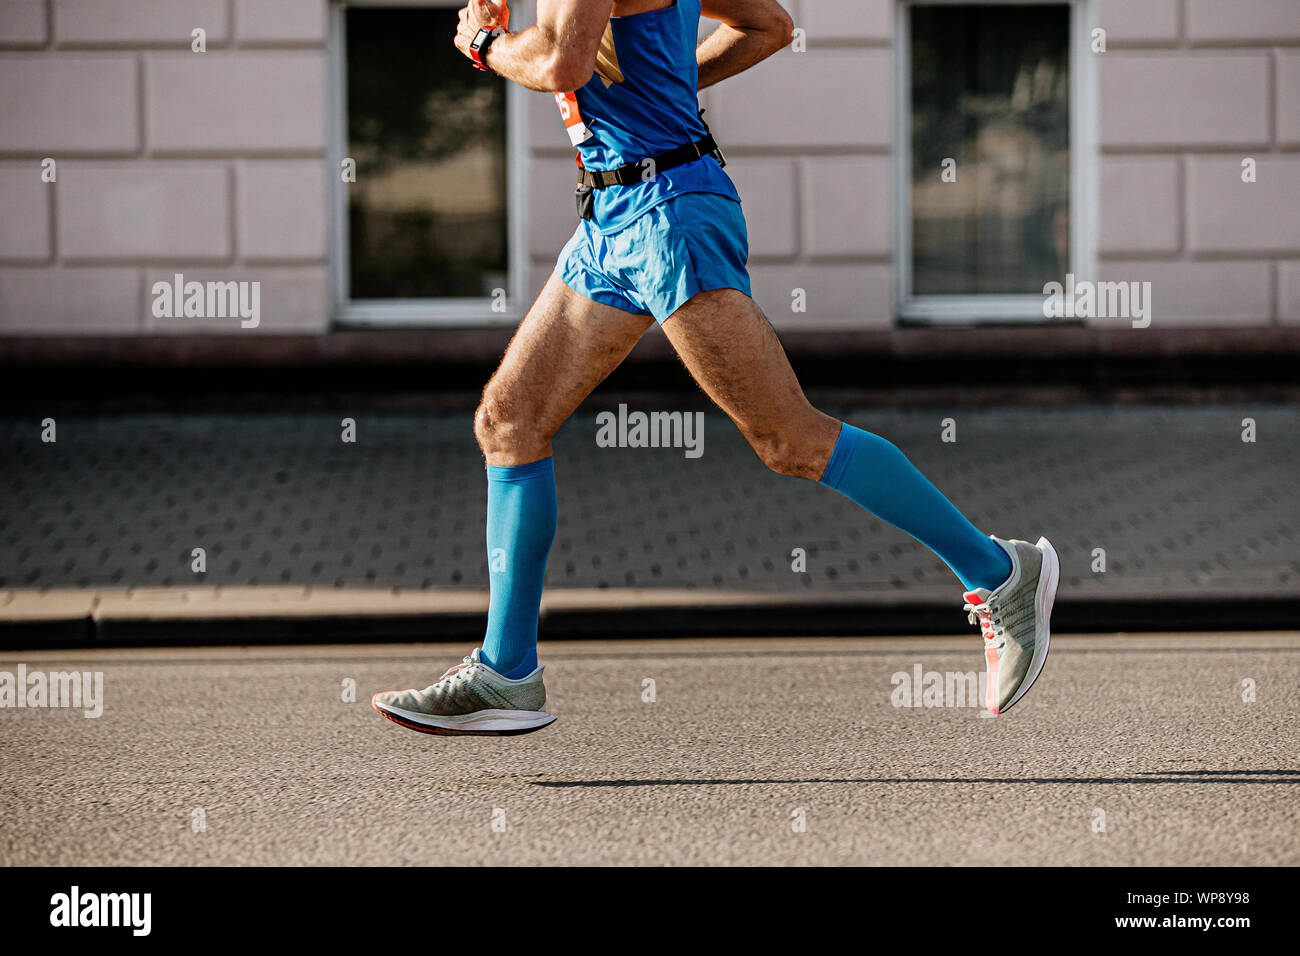 Sportler Läufer in blau Kompression Socken laufen in street City Marathon  Stockfotografie - Alamy